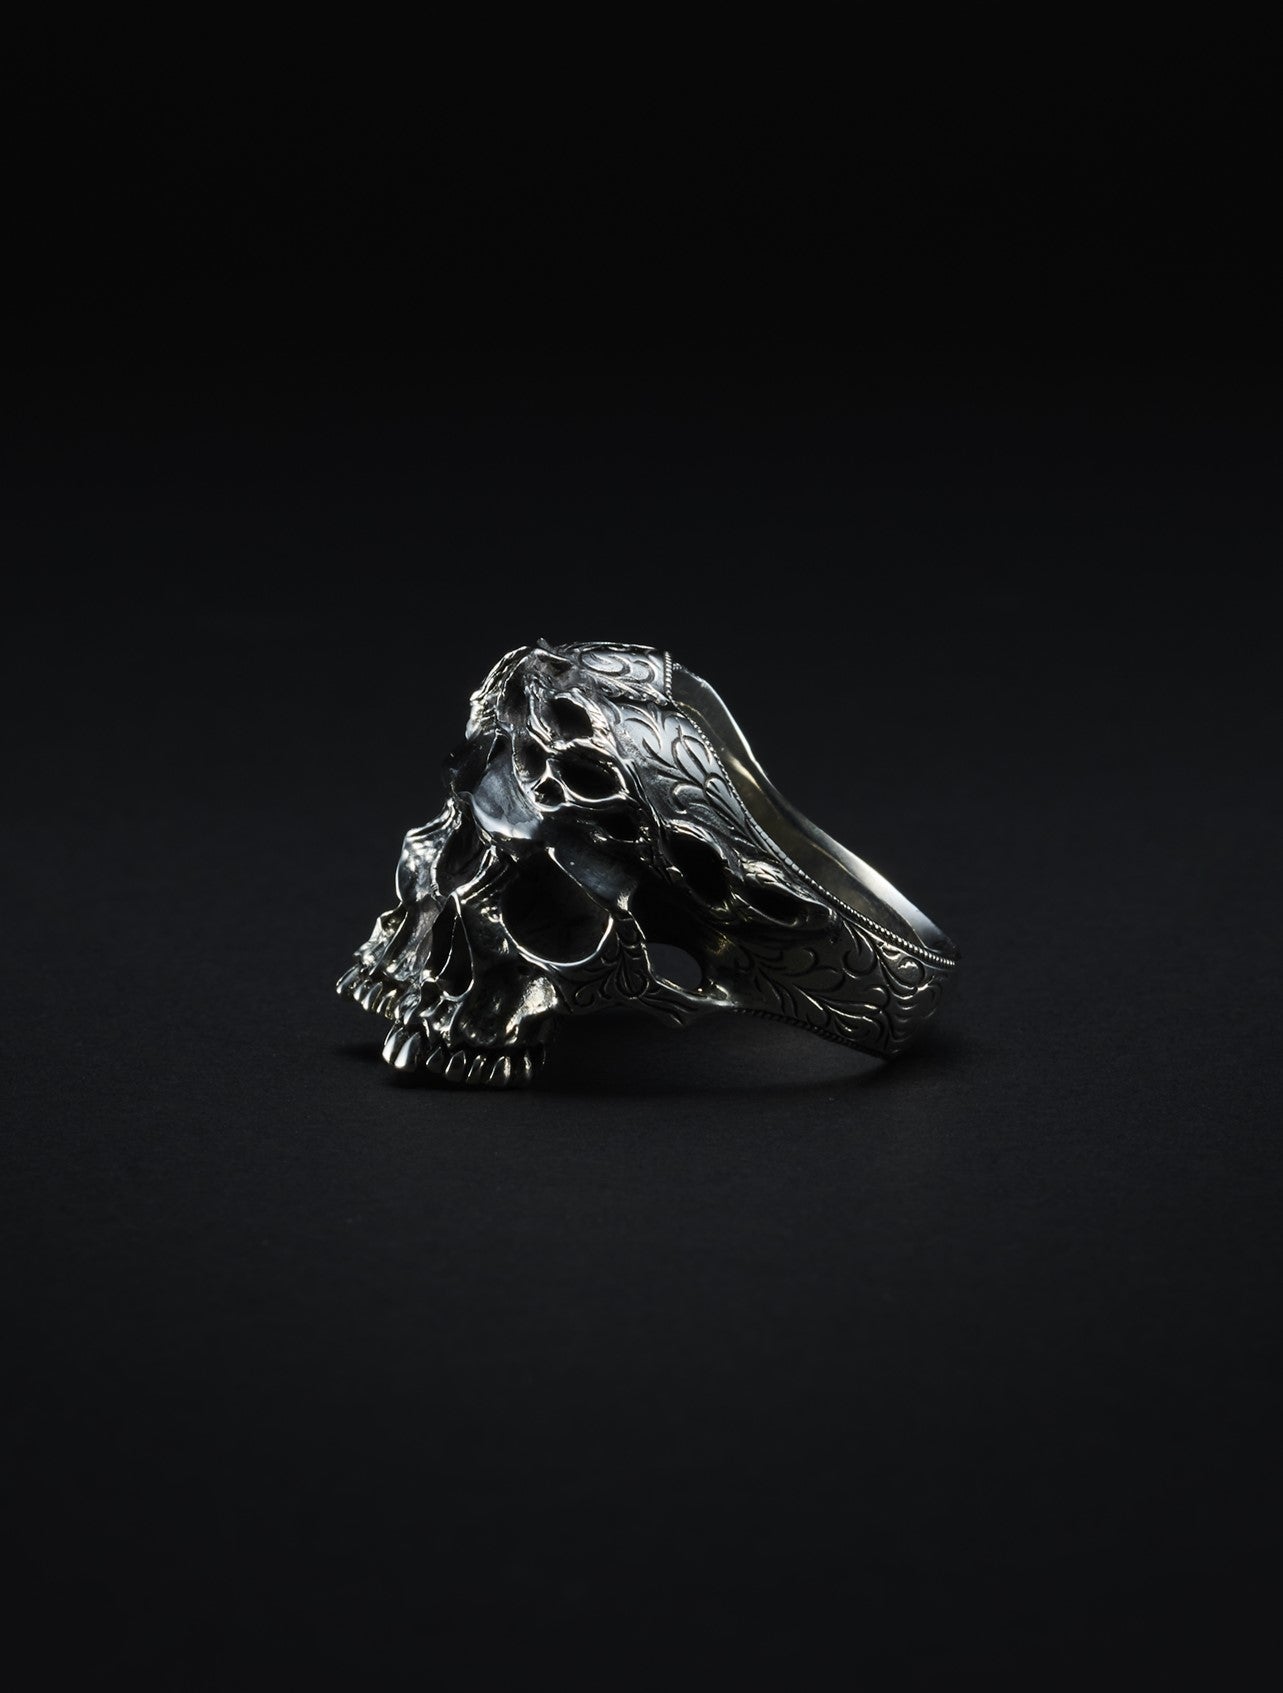 Engraved Calvary Skull Ring